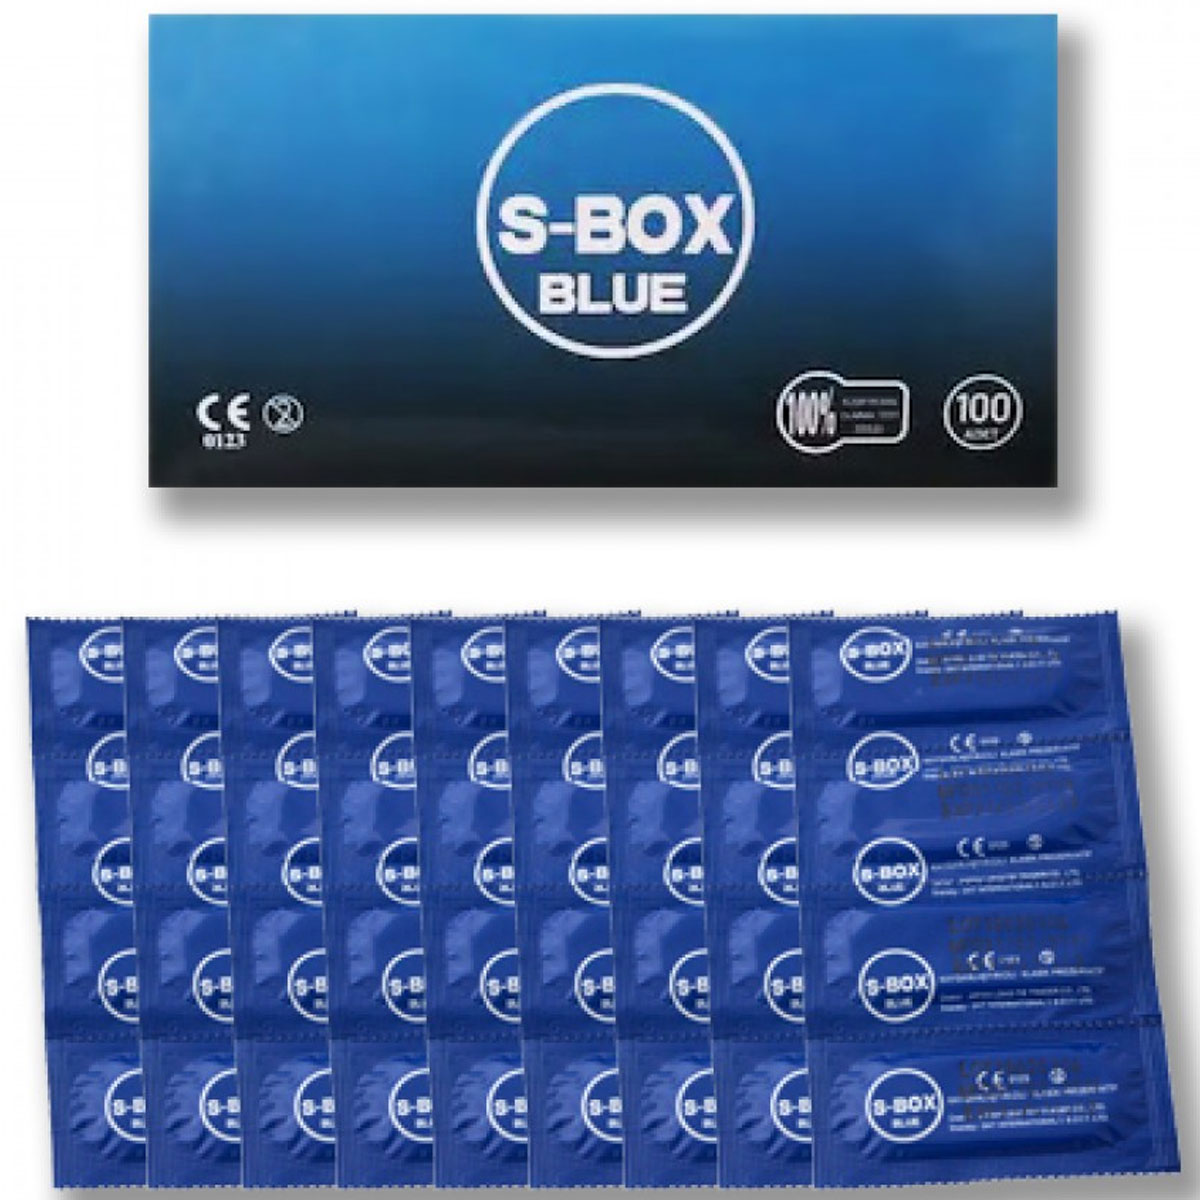 S-Box Blue 100 l Eko Paket Prezervatif C-5092